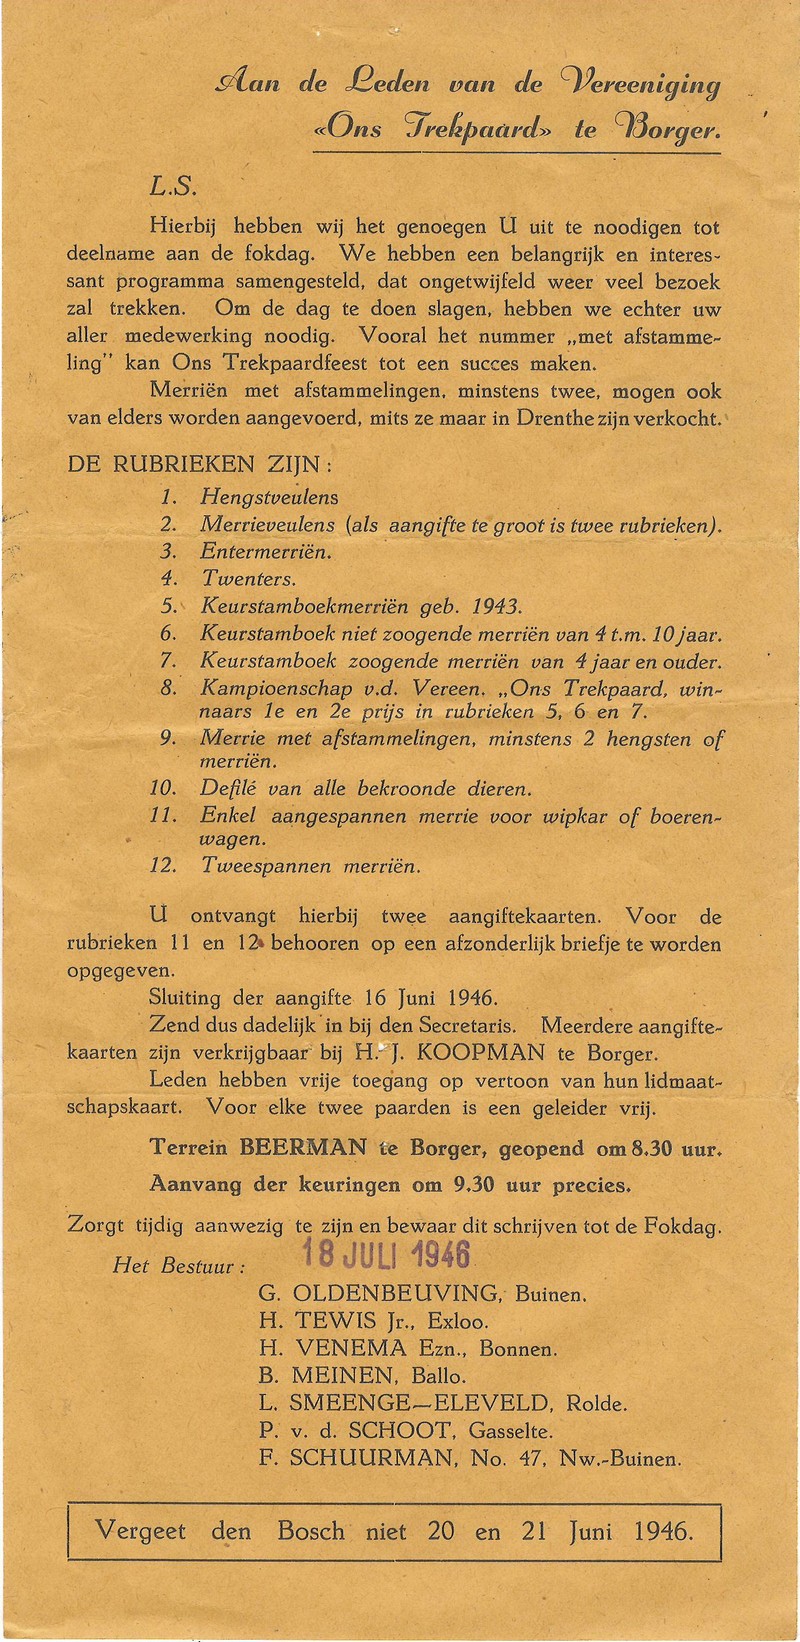 19460718 Uitnodiging Fokdag Trekpaarden Borger